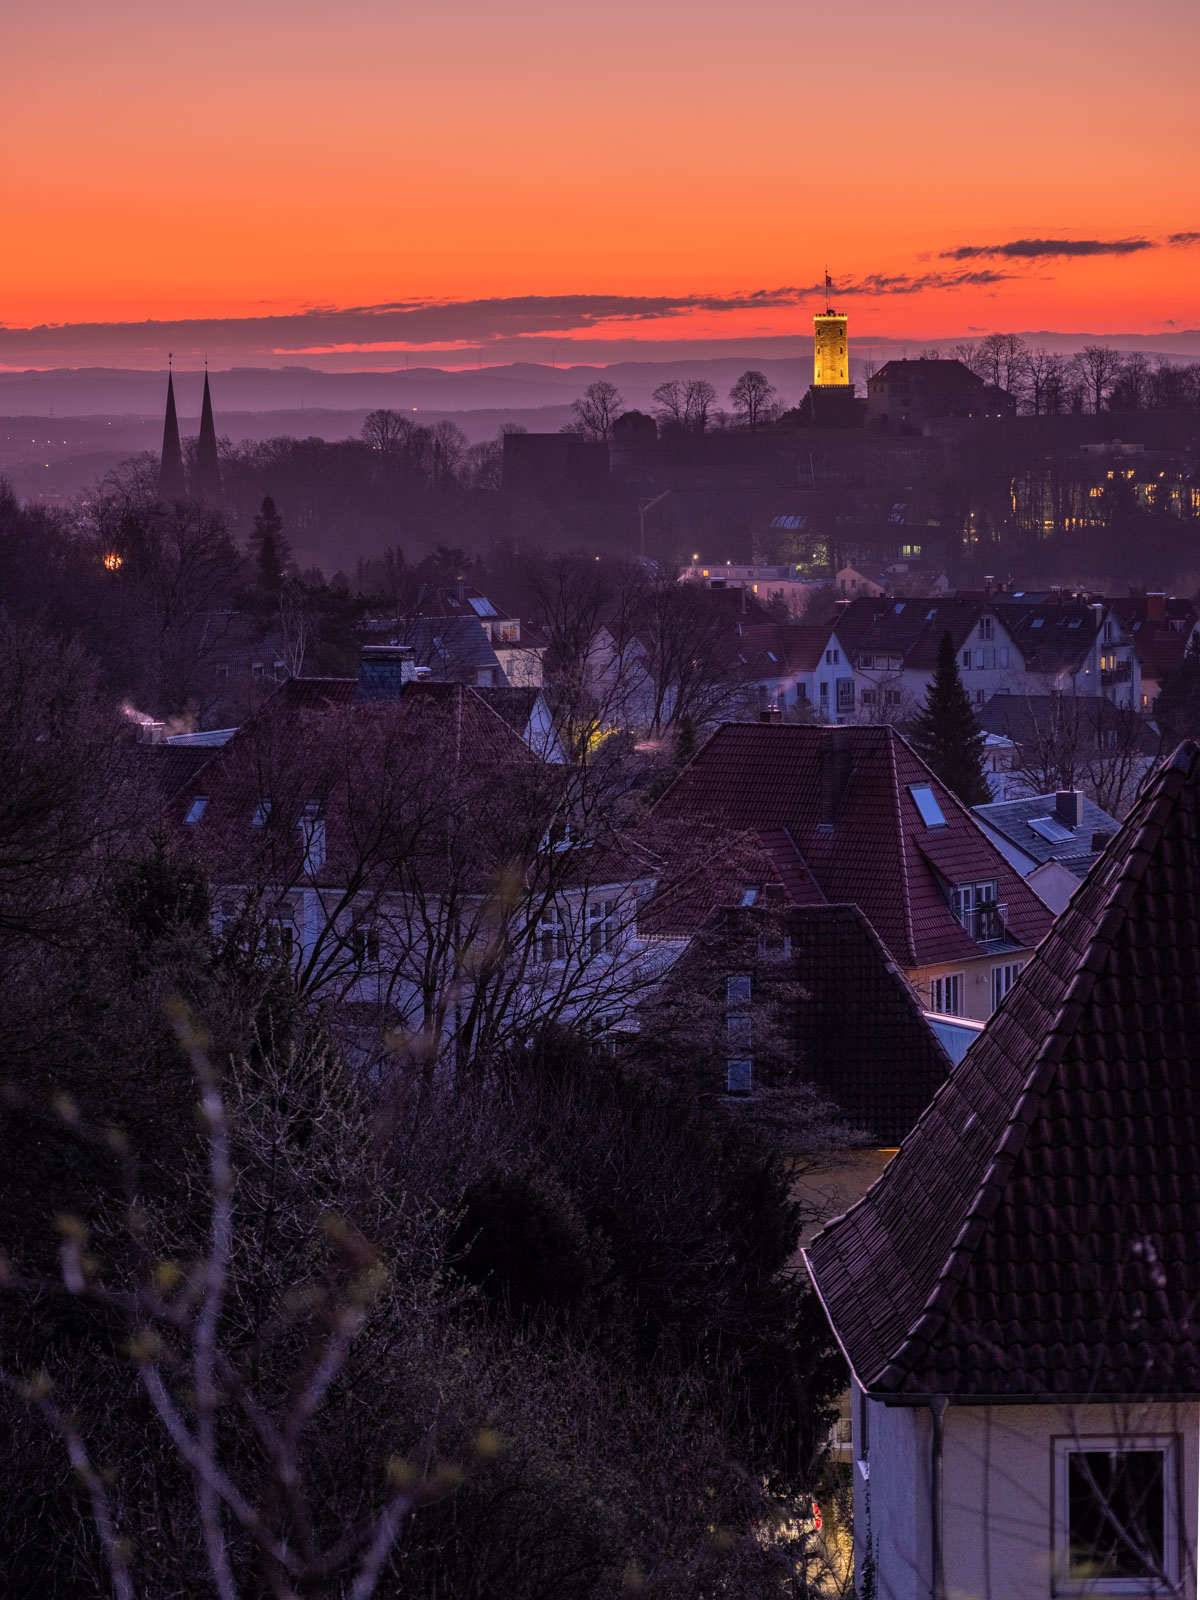 Spring sunrise over Bielefeld with Sparrenburg Castle.